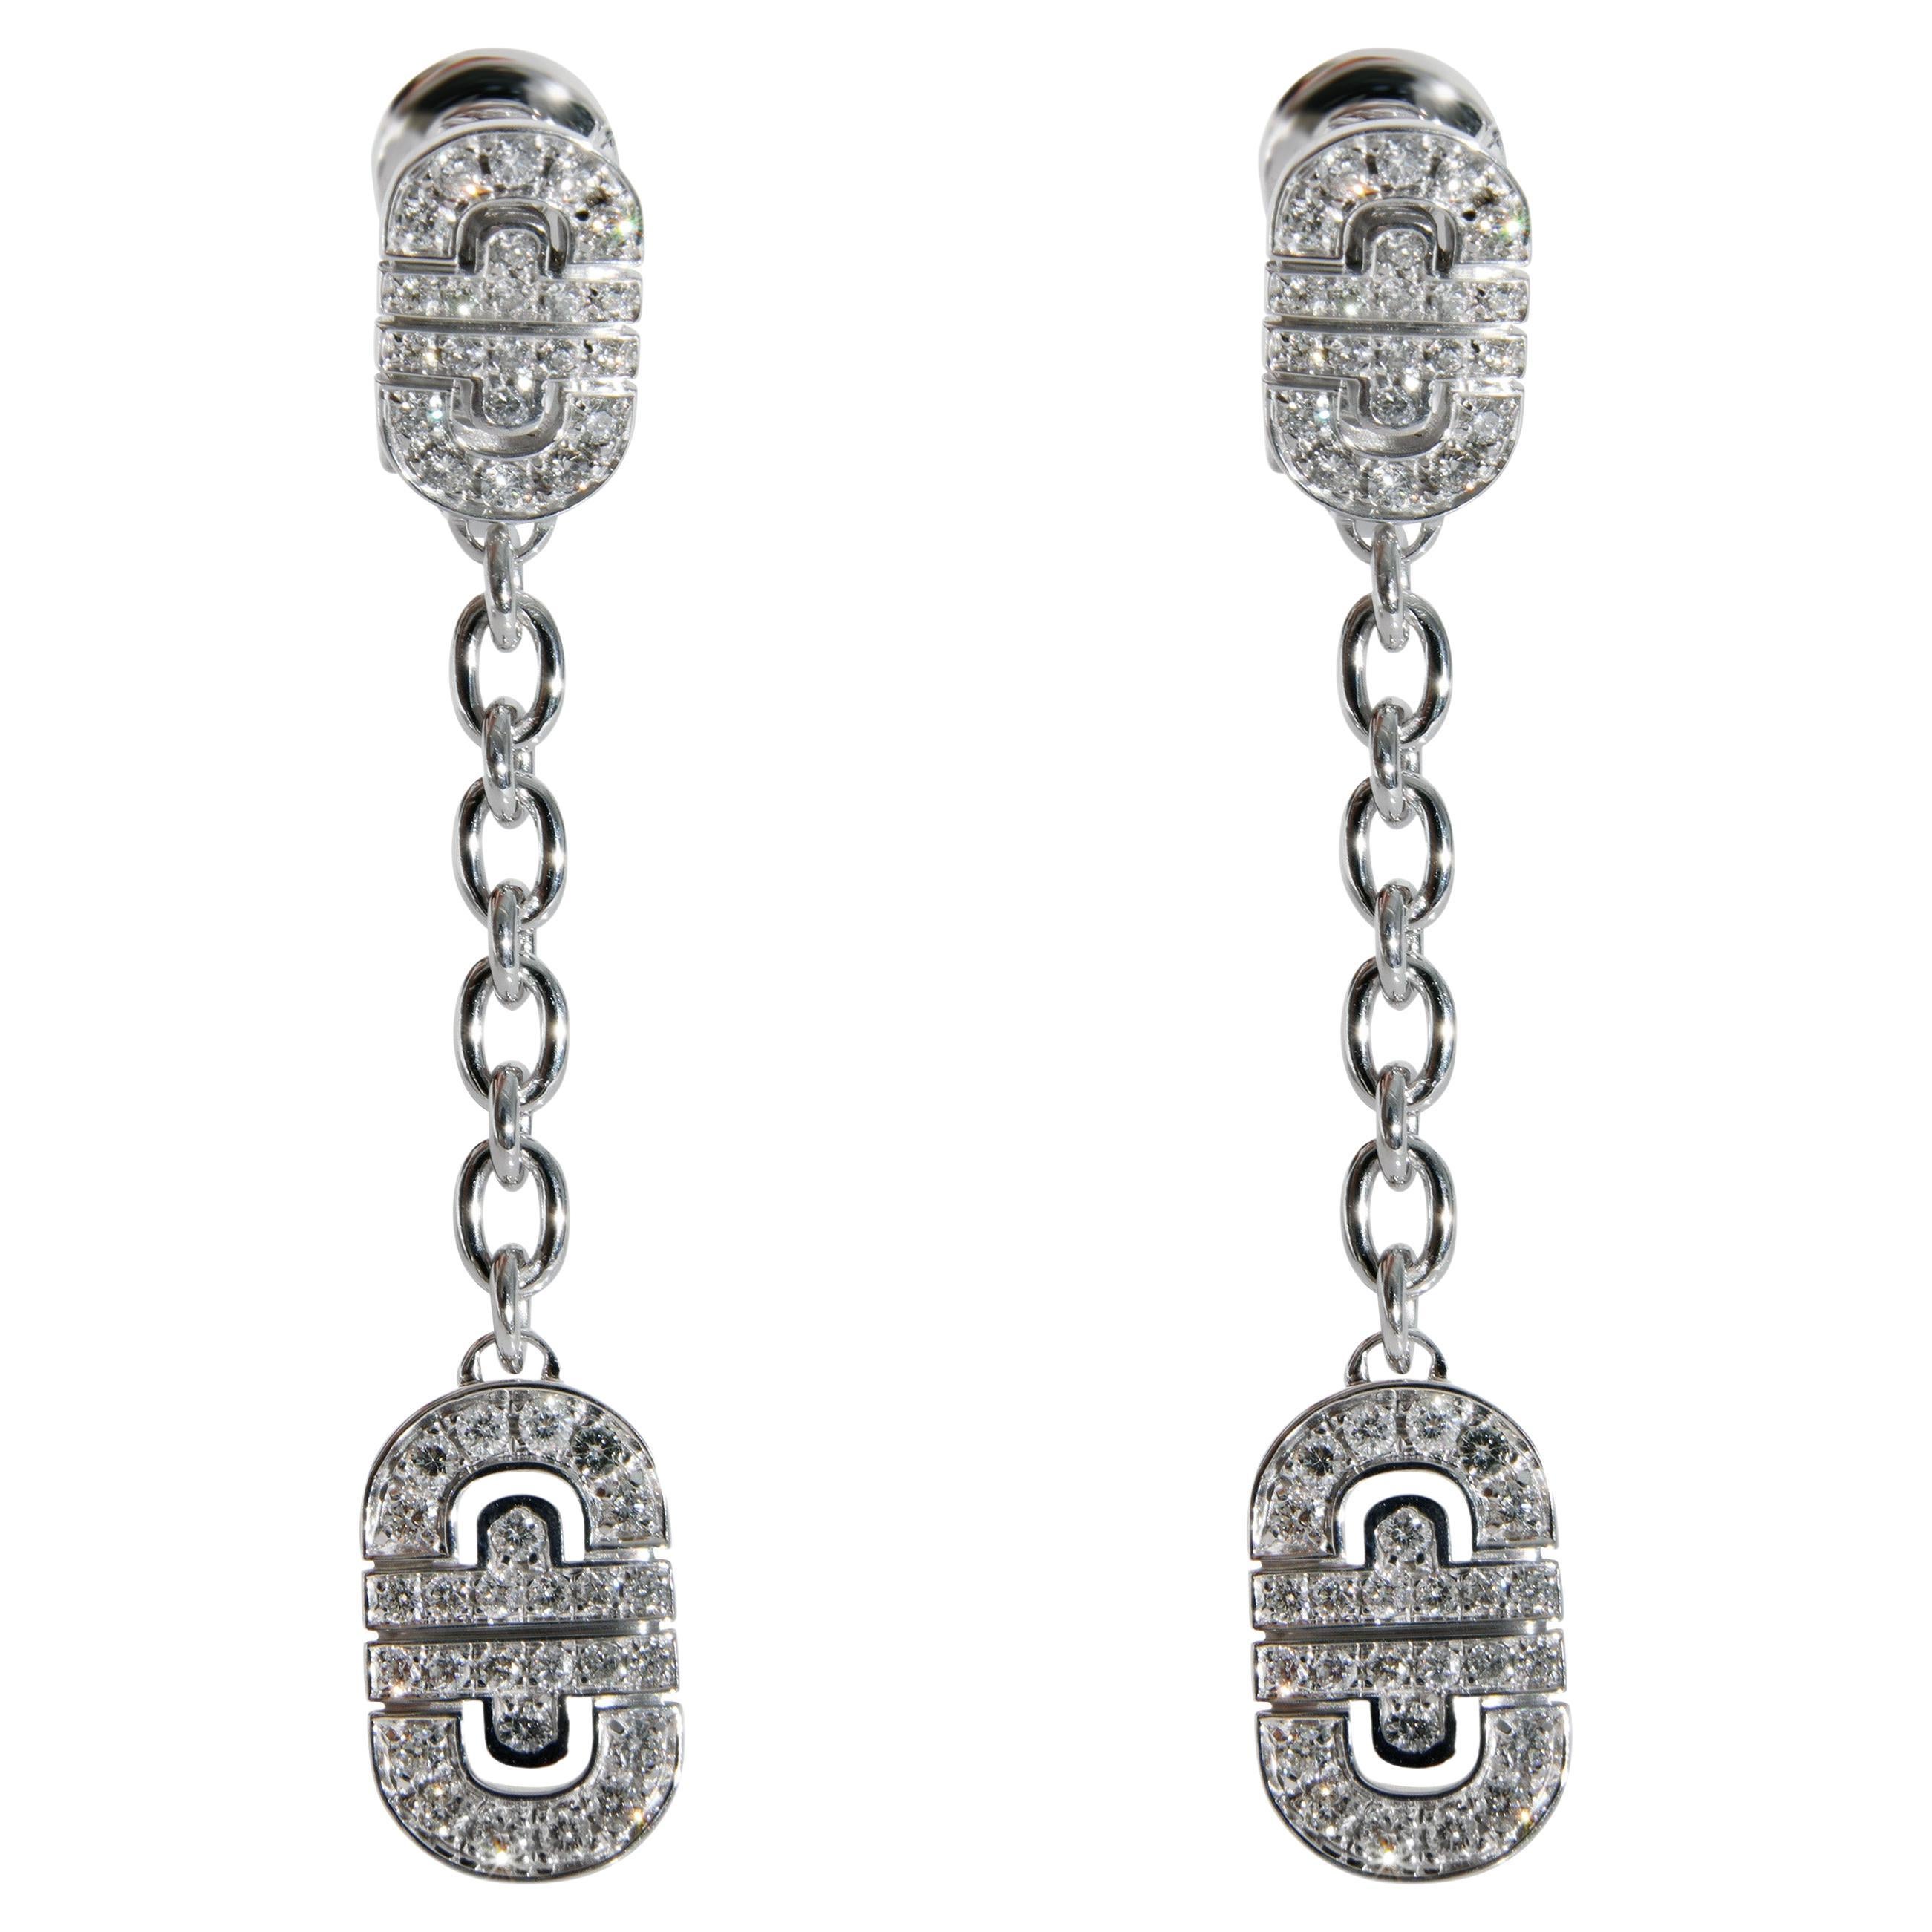 BVLGARI Parentesi Diamond Earrings in 18k White Gold 1.15 CTW For Sale